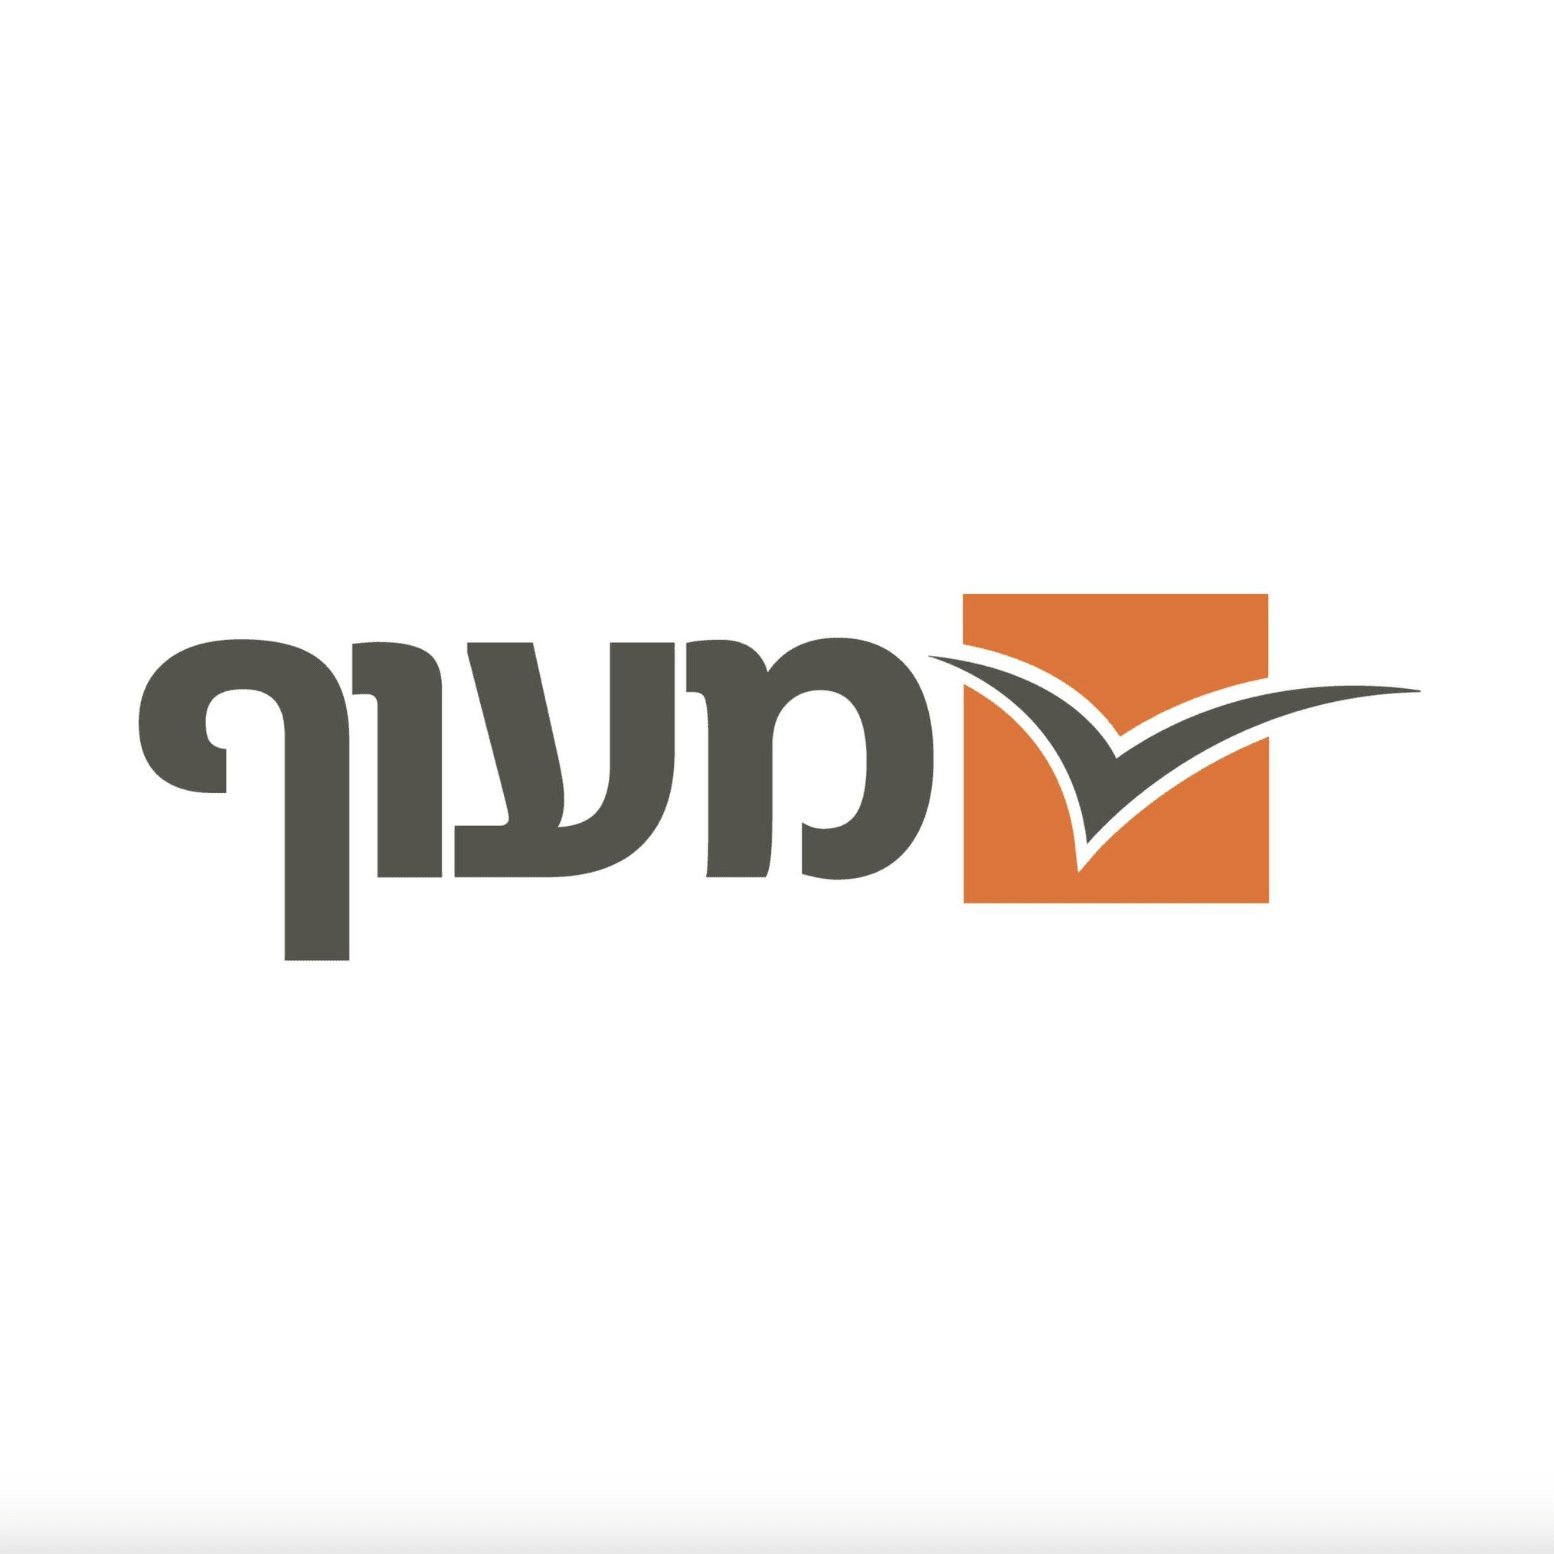 מעוף - משאבי אנוש logo